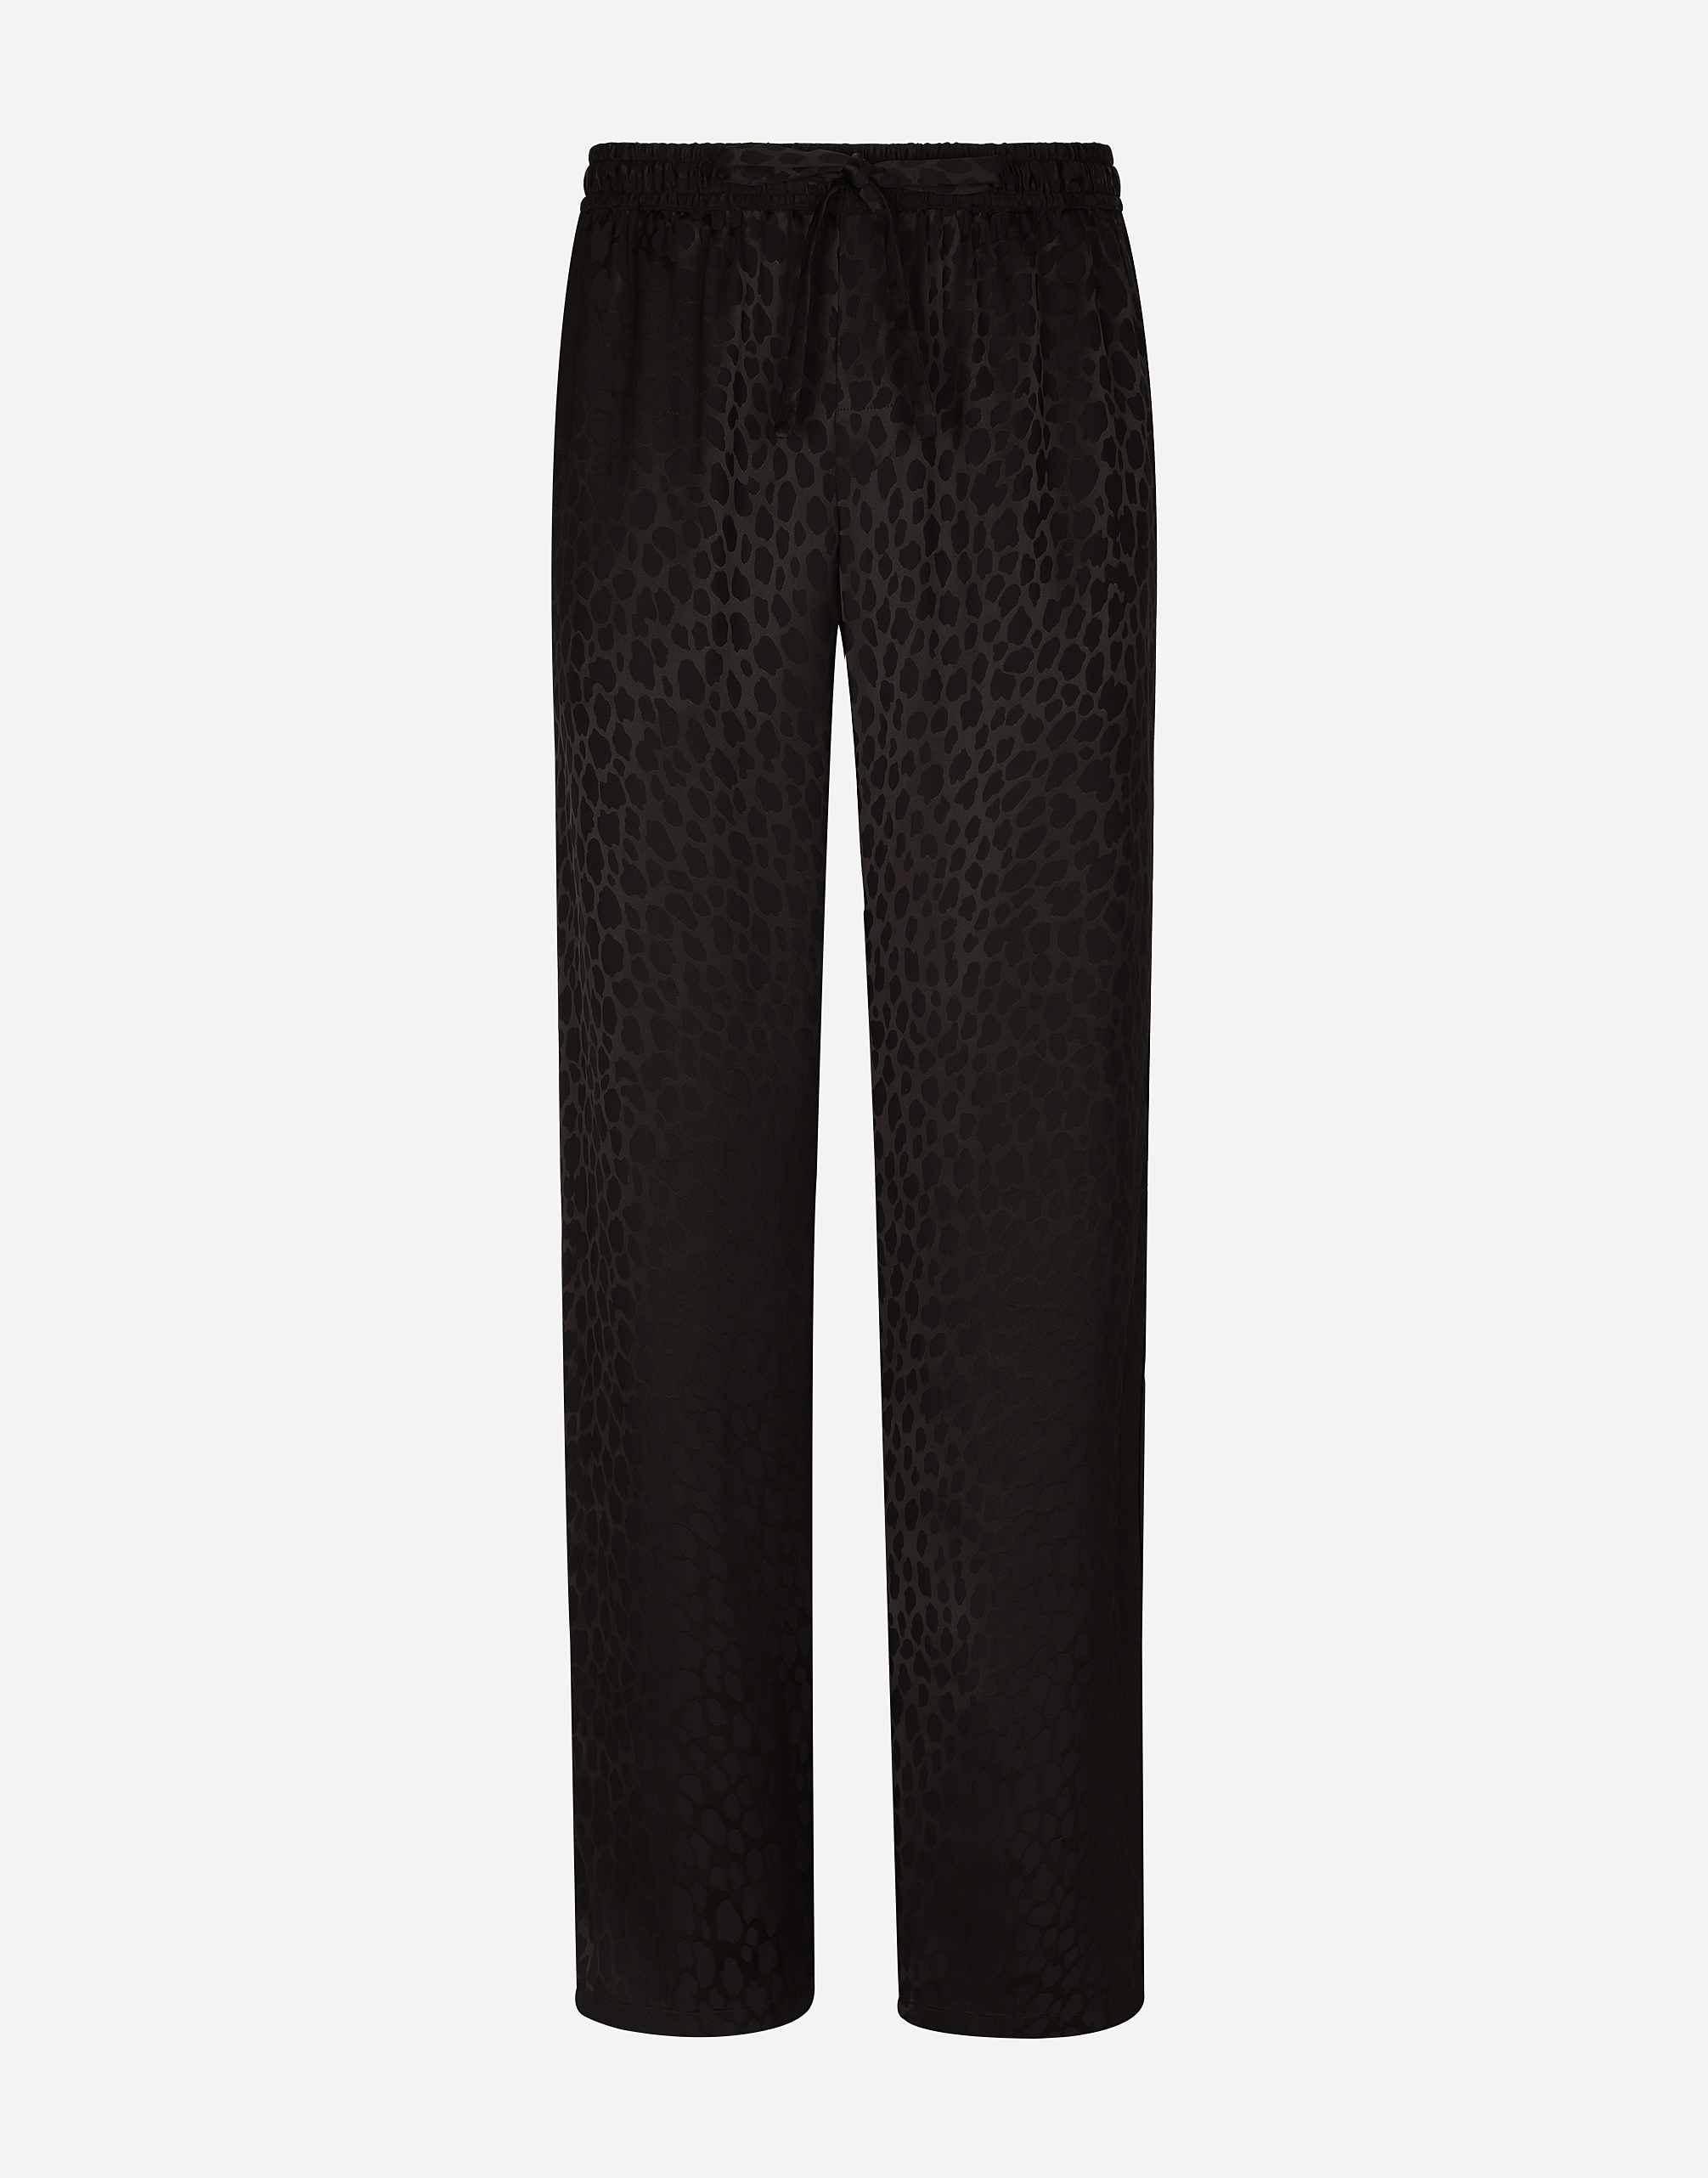 Ocelot-design silk jacquard jogging pants in Black